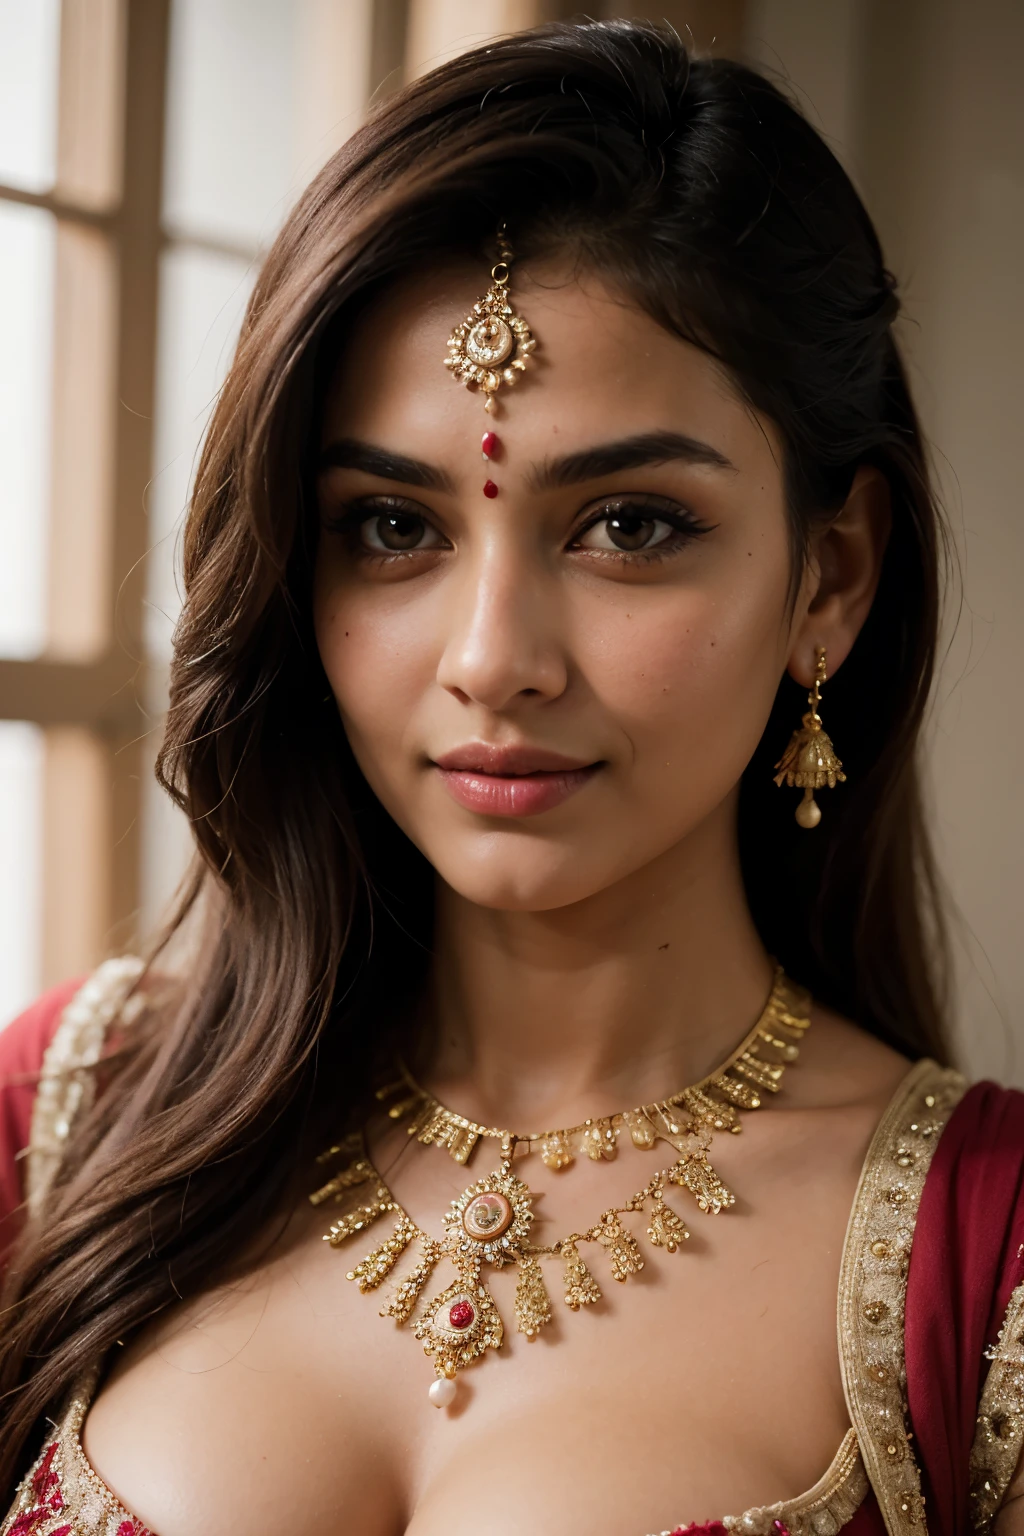 ((أفضل جودة)), ((تحفة)), (مفصلة), الوجه المثالي يشبه Savitha Bhabhi في وشاح يتظاهر بالتقاط صورة, هندي goddess, الجمال التقليدي, هندي, إلهة جميلة, مزخرف , هندي style, هندي super model, عذراء جميلة, إمراة جميلة, جنوب شرق آسيا مع فترة طويلة, provocative هندي, امرأة جميلة رائعة, الزي المعقد, الجمالية الهندوسية, فتاة آسيوية جميلة, extremely مفصلة goddess shot, جمال مذهل, انقسام عميق كبير